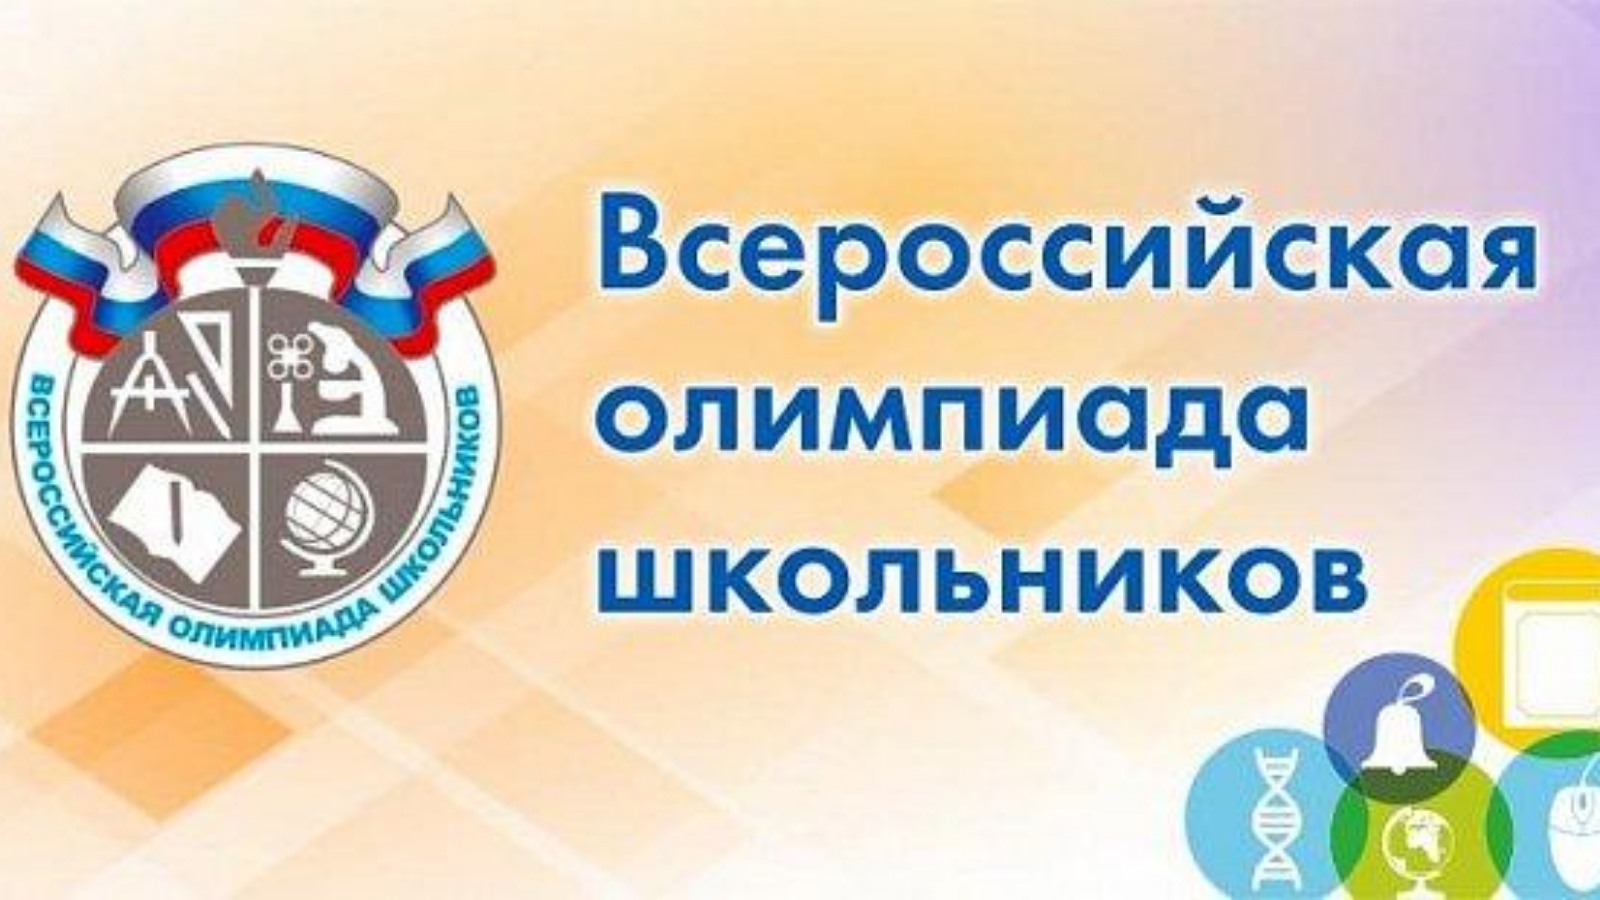 Всероссийская олимпиада школьников 2022-2023.